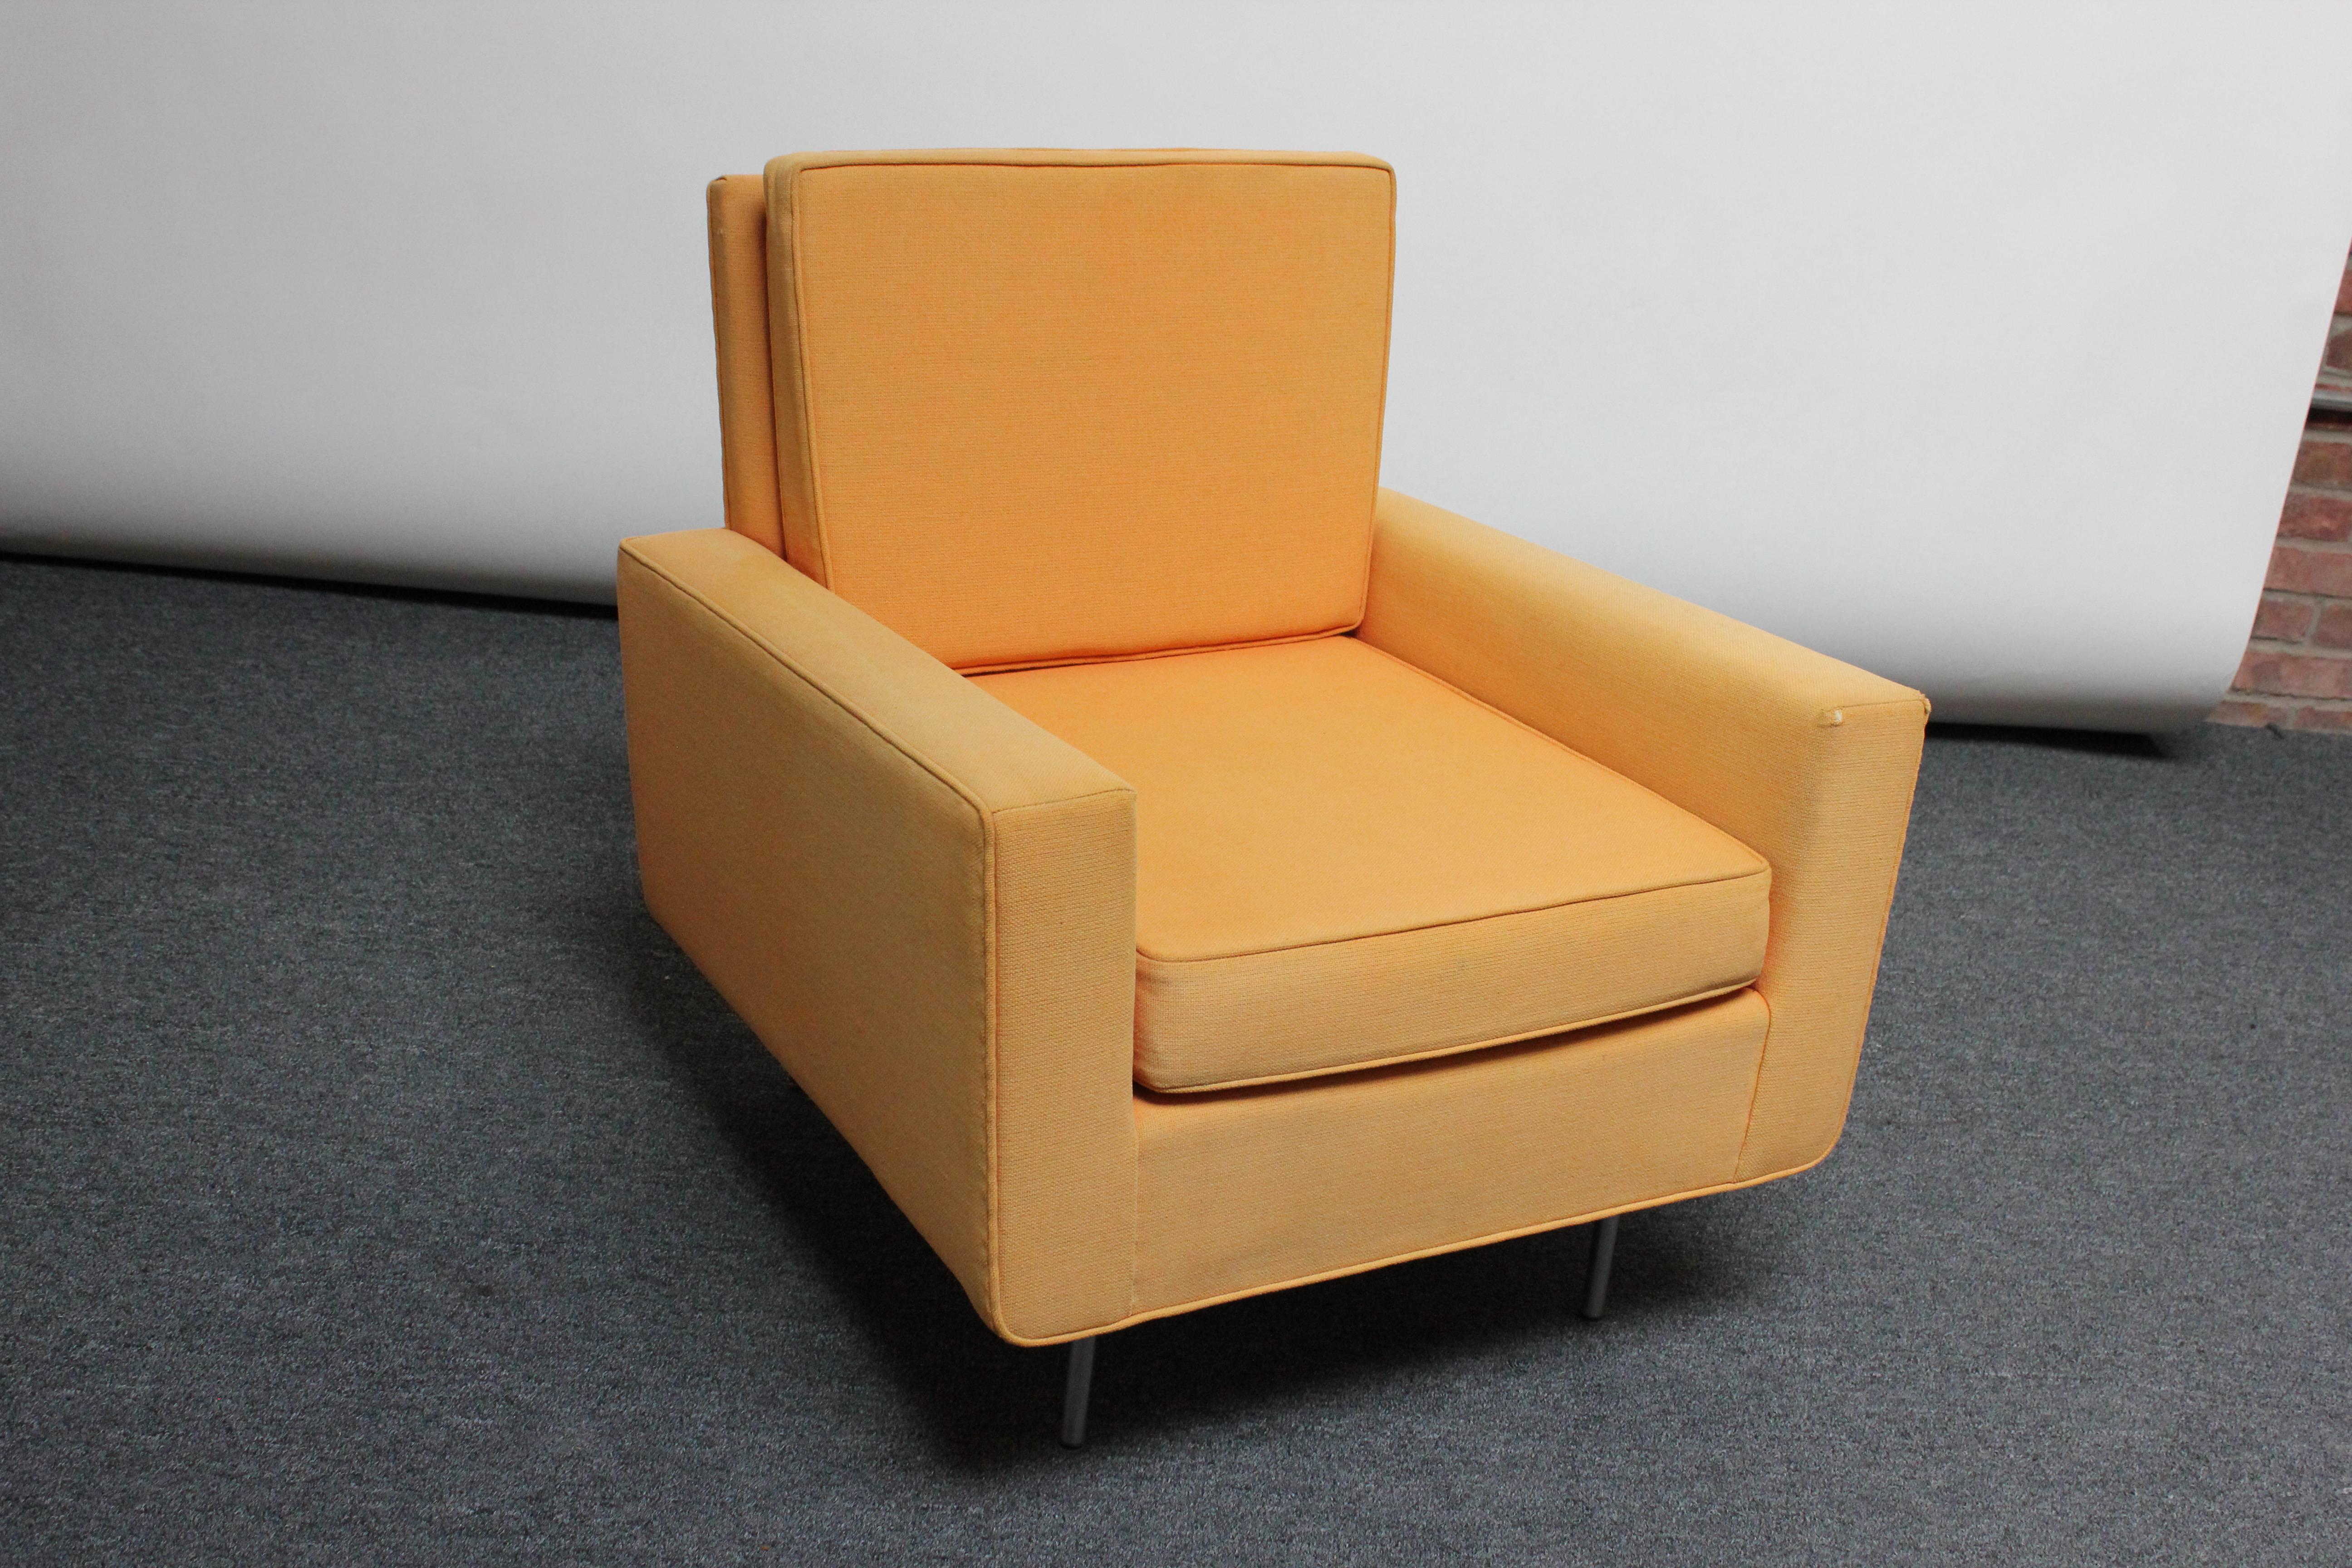 Fauteuil Knoll conçu par Florence Knoll au début des années 1950. Il conserve son tissu orange d'origine et repose sur des pieds cylindriques en acier poli. Cet exemple des années 1960, comme en témoigne l'étiquette 